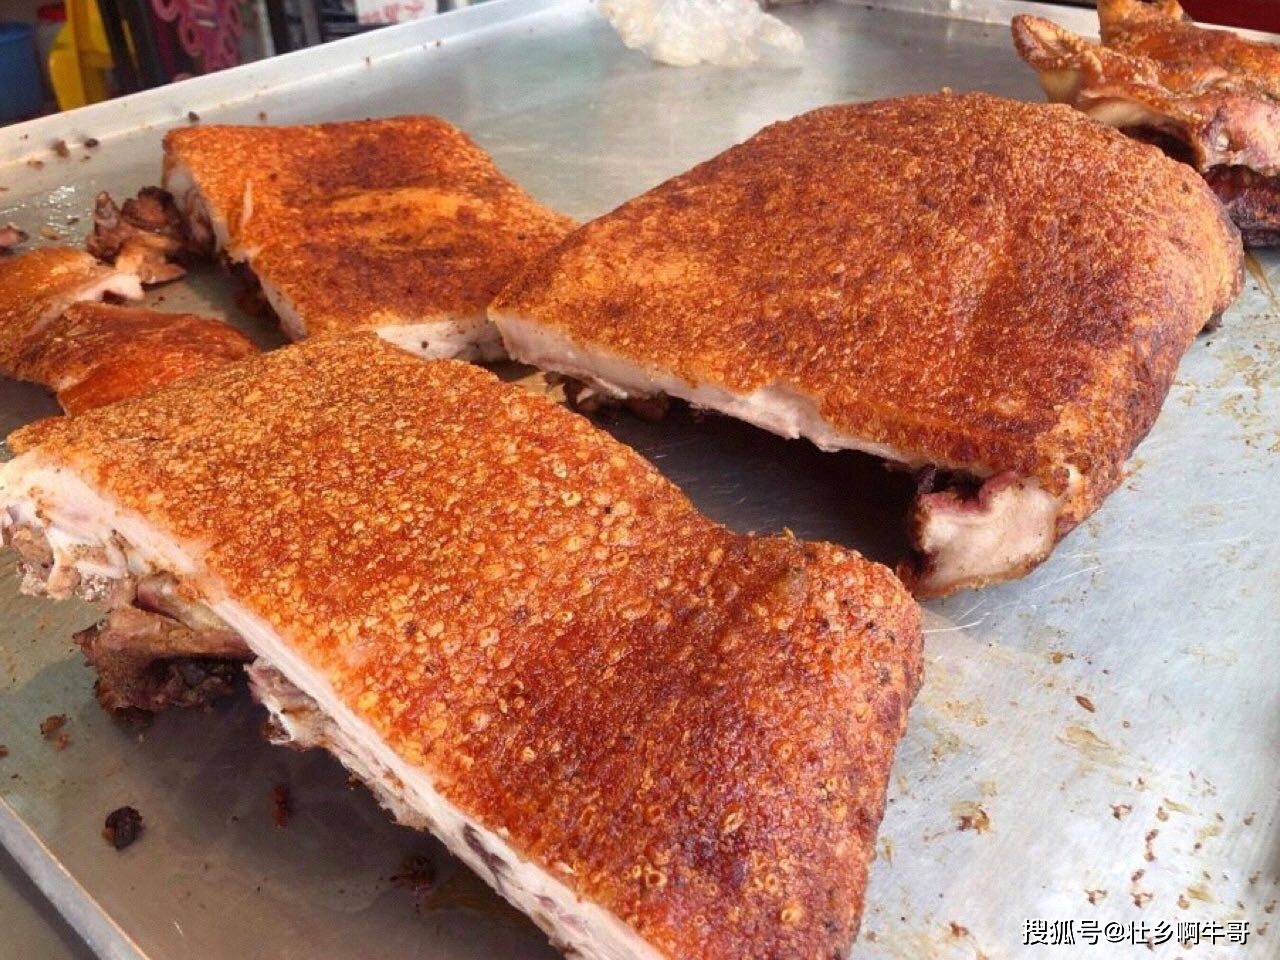 原创广西扶绥特色美食脆皮烤猪,85元一斤,很多顾客从南宁开车过来吃